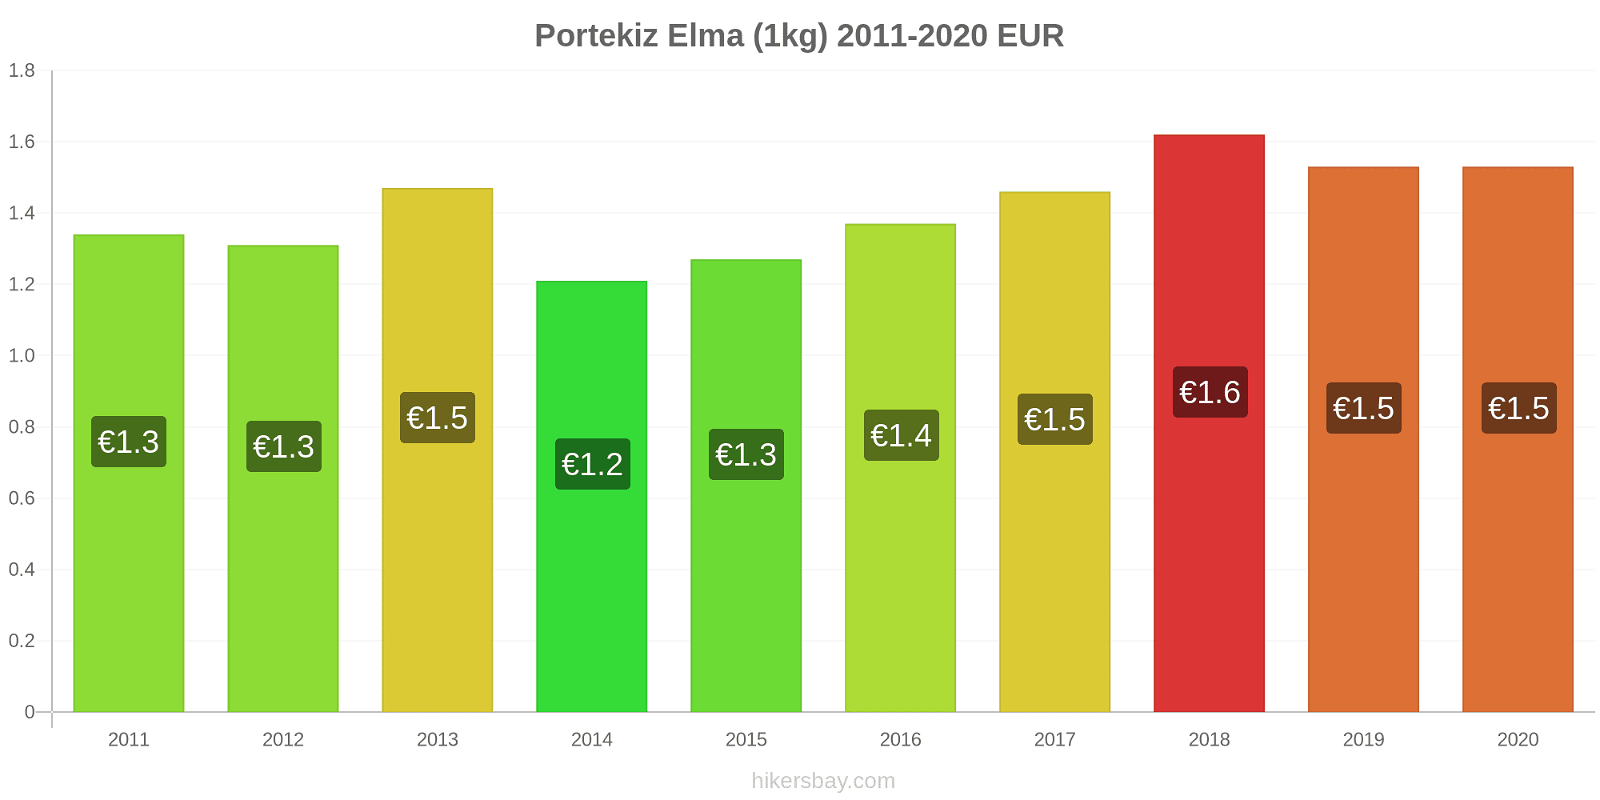 Portekiz fiyat değişiklikleri Elma (1kg) hikersbay.com